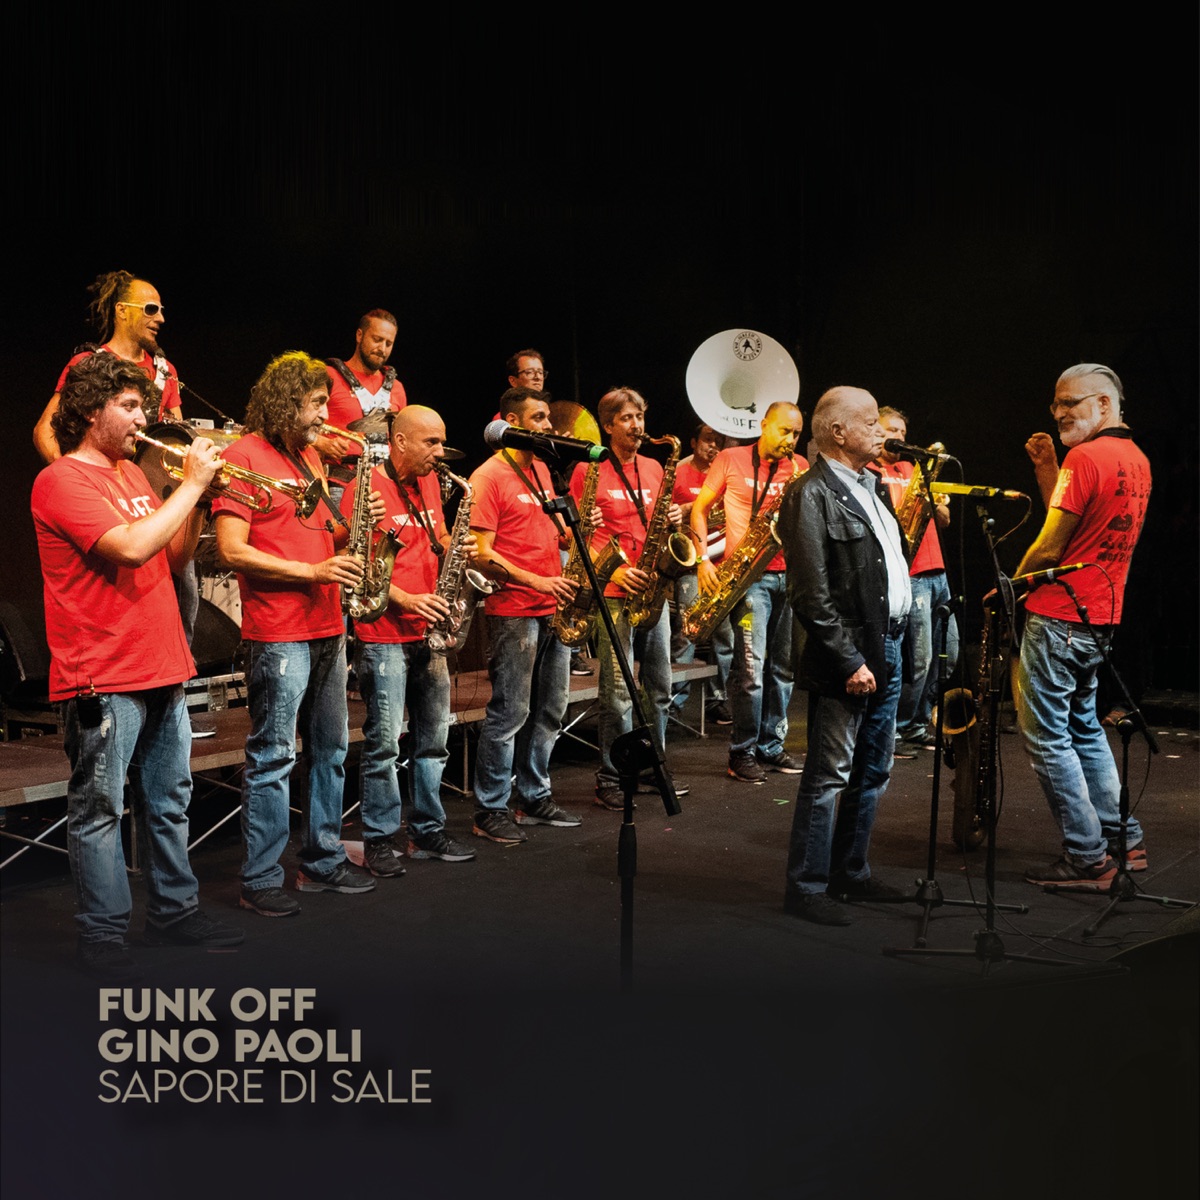 Sapore di sale - Single - Album di Gino Paoli & Funk Off - Apple Music